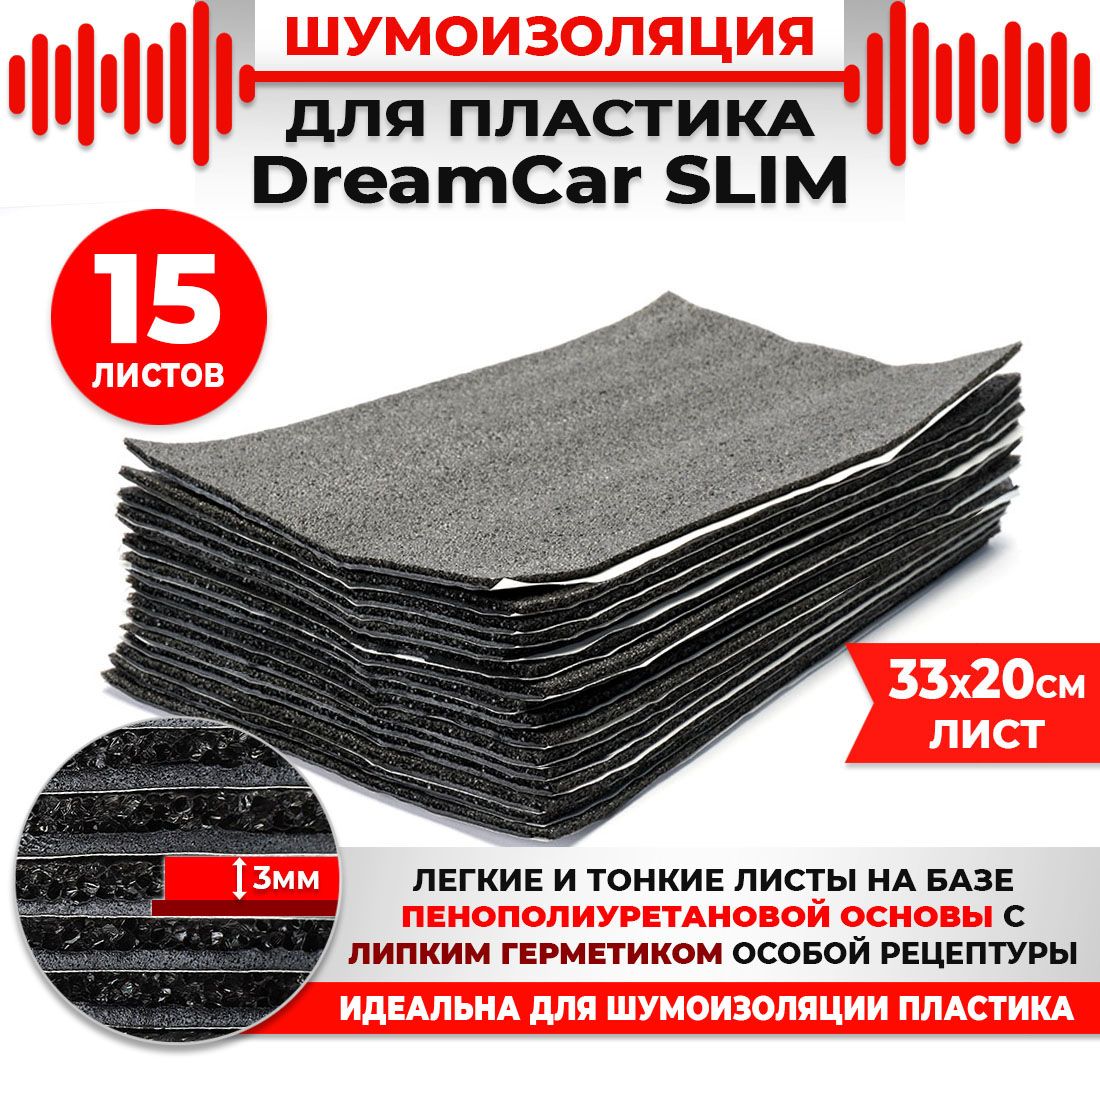 15 шт. Шумоизоляция 2х слойная для пластика DreamCar Slim 3мм 33x20см 15 листов